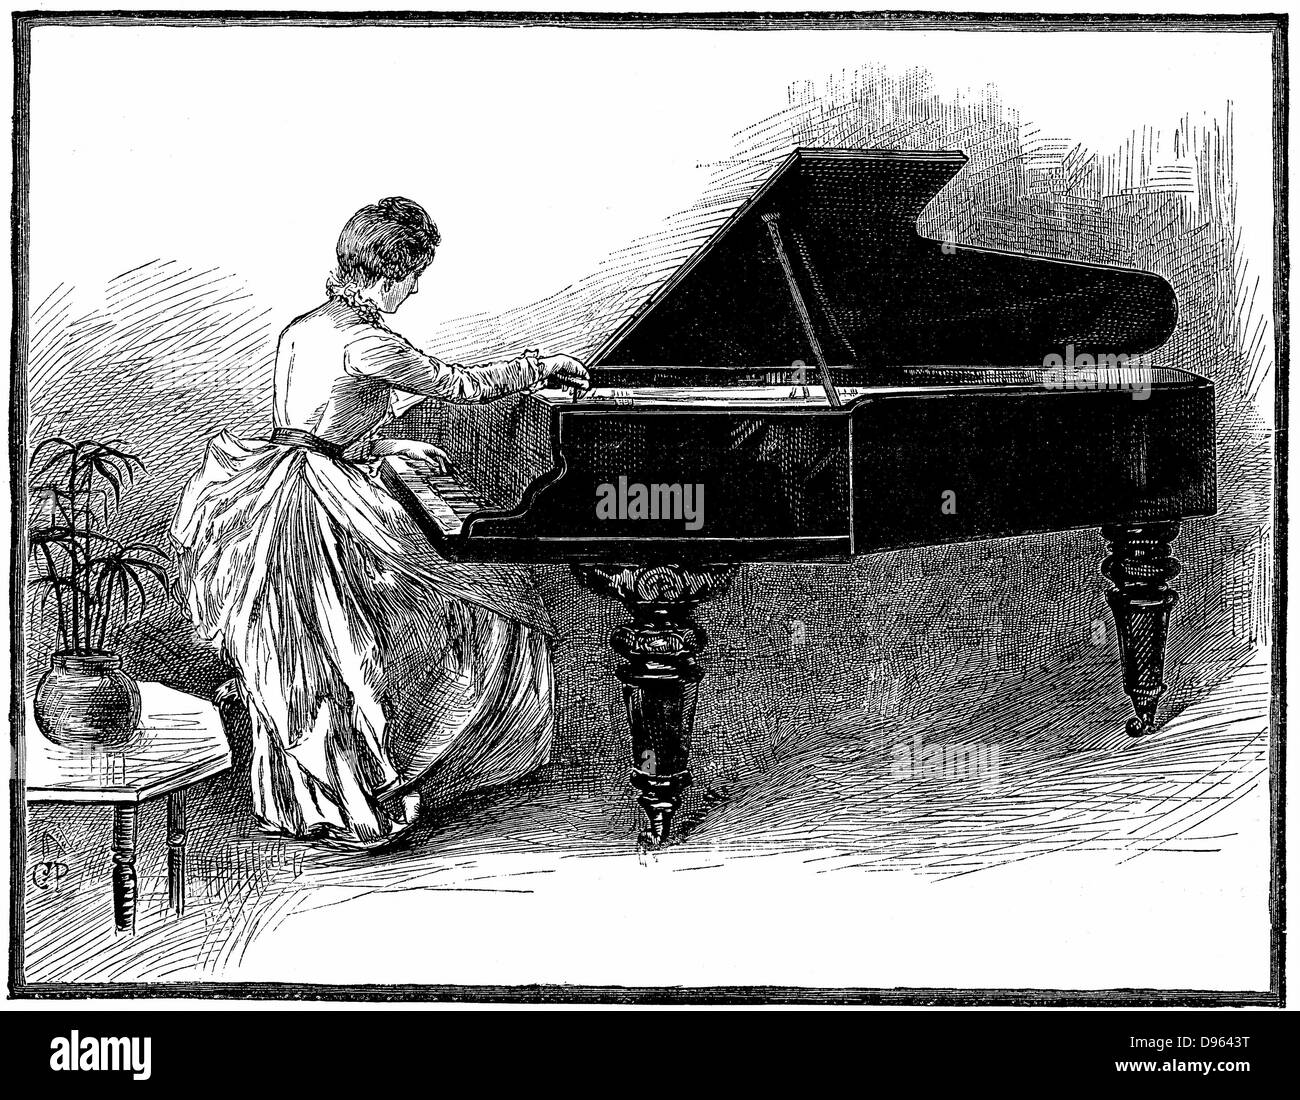 Junge Frau tuning einen Flügel. Klavierstimmen wurde als eine geeignete Besetzung für eine junge Frau gezwungen, ihren Lebensunterhalt zu verdienen. Holzstich, 1887. Stockfoto